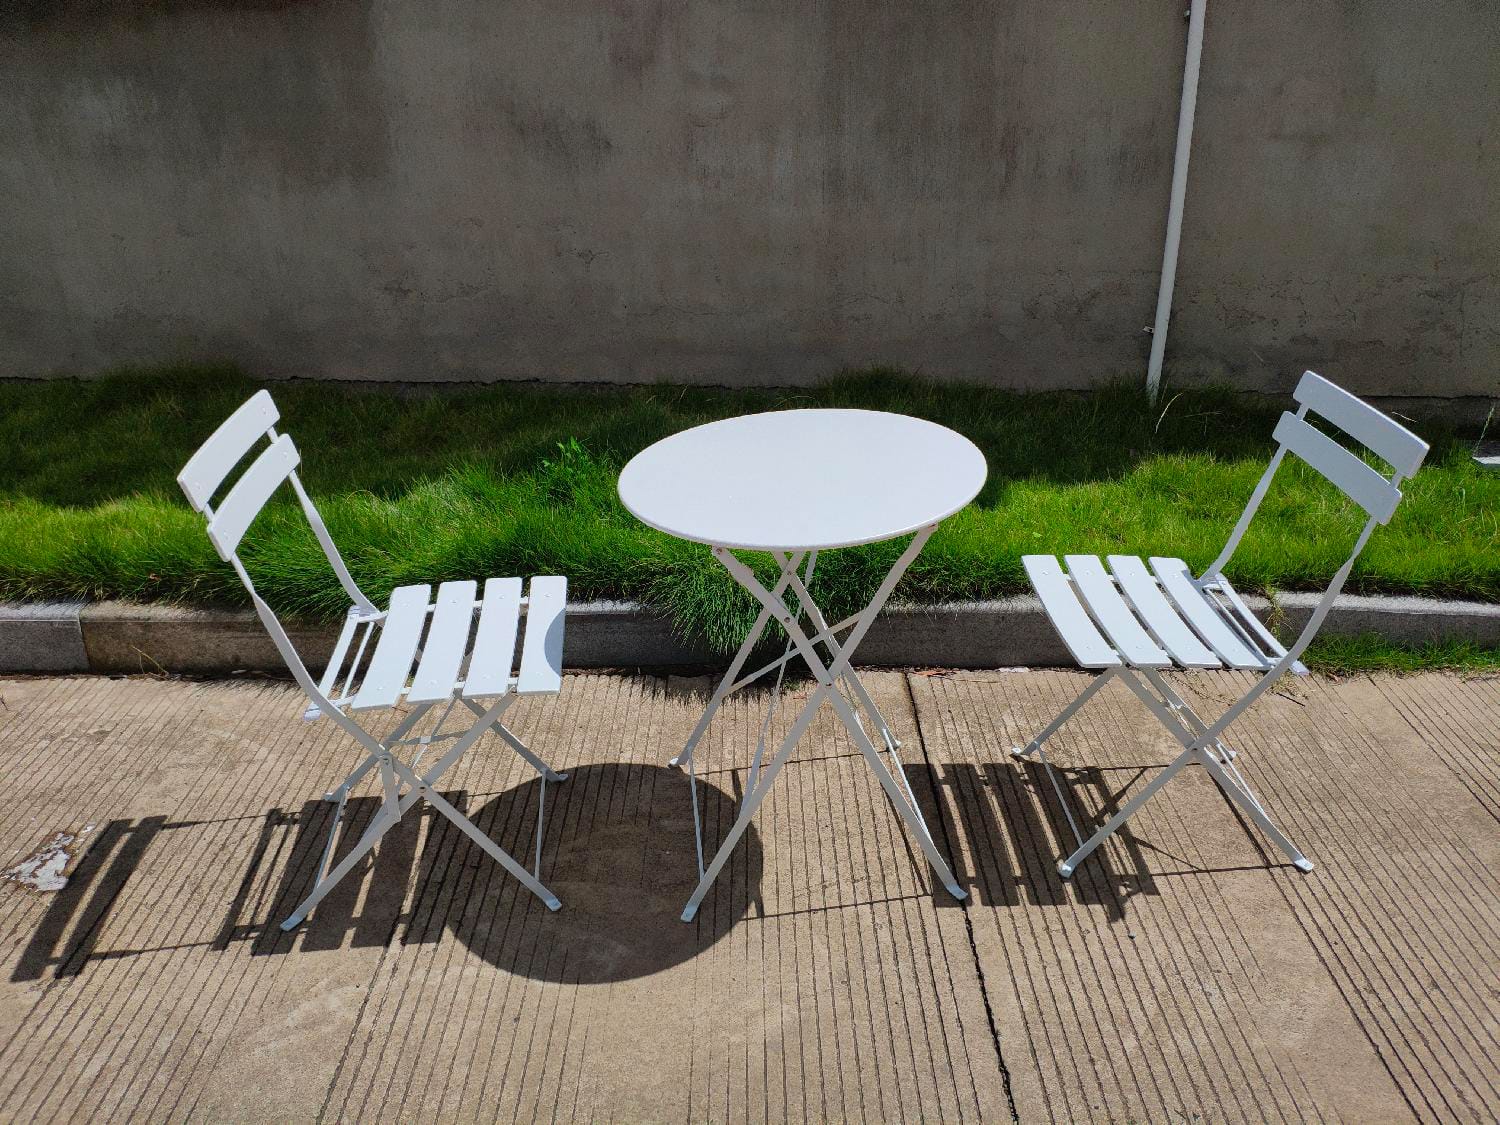 giardini del re fs460 white tavolino da giardino esterno pieghevole rotondo in acciaio + 2 sedie pieghevoli colore bianco - giotto